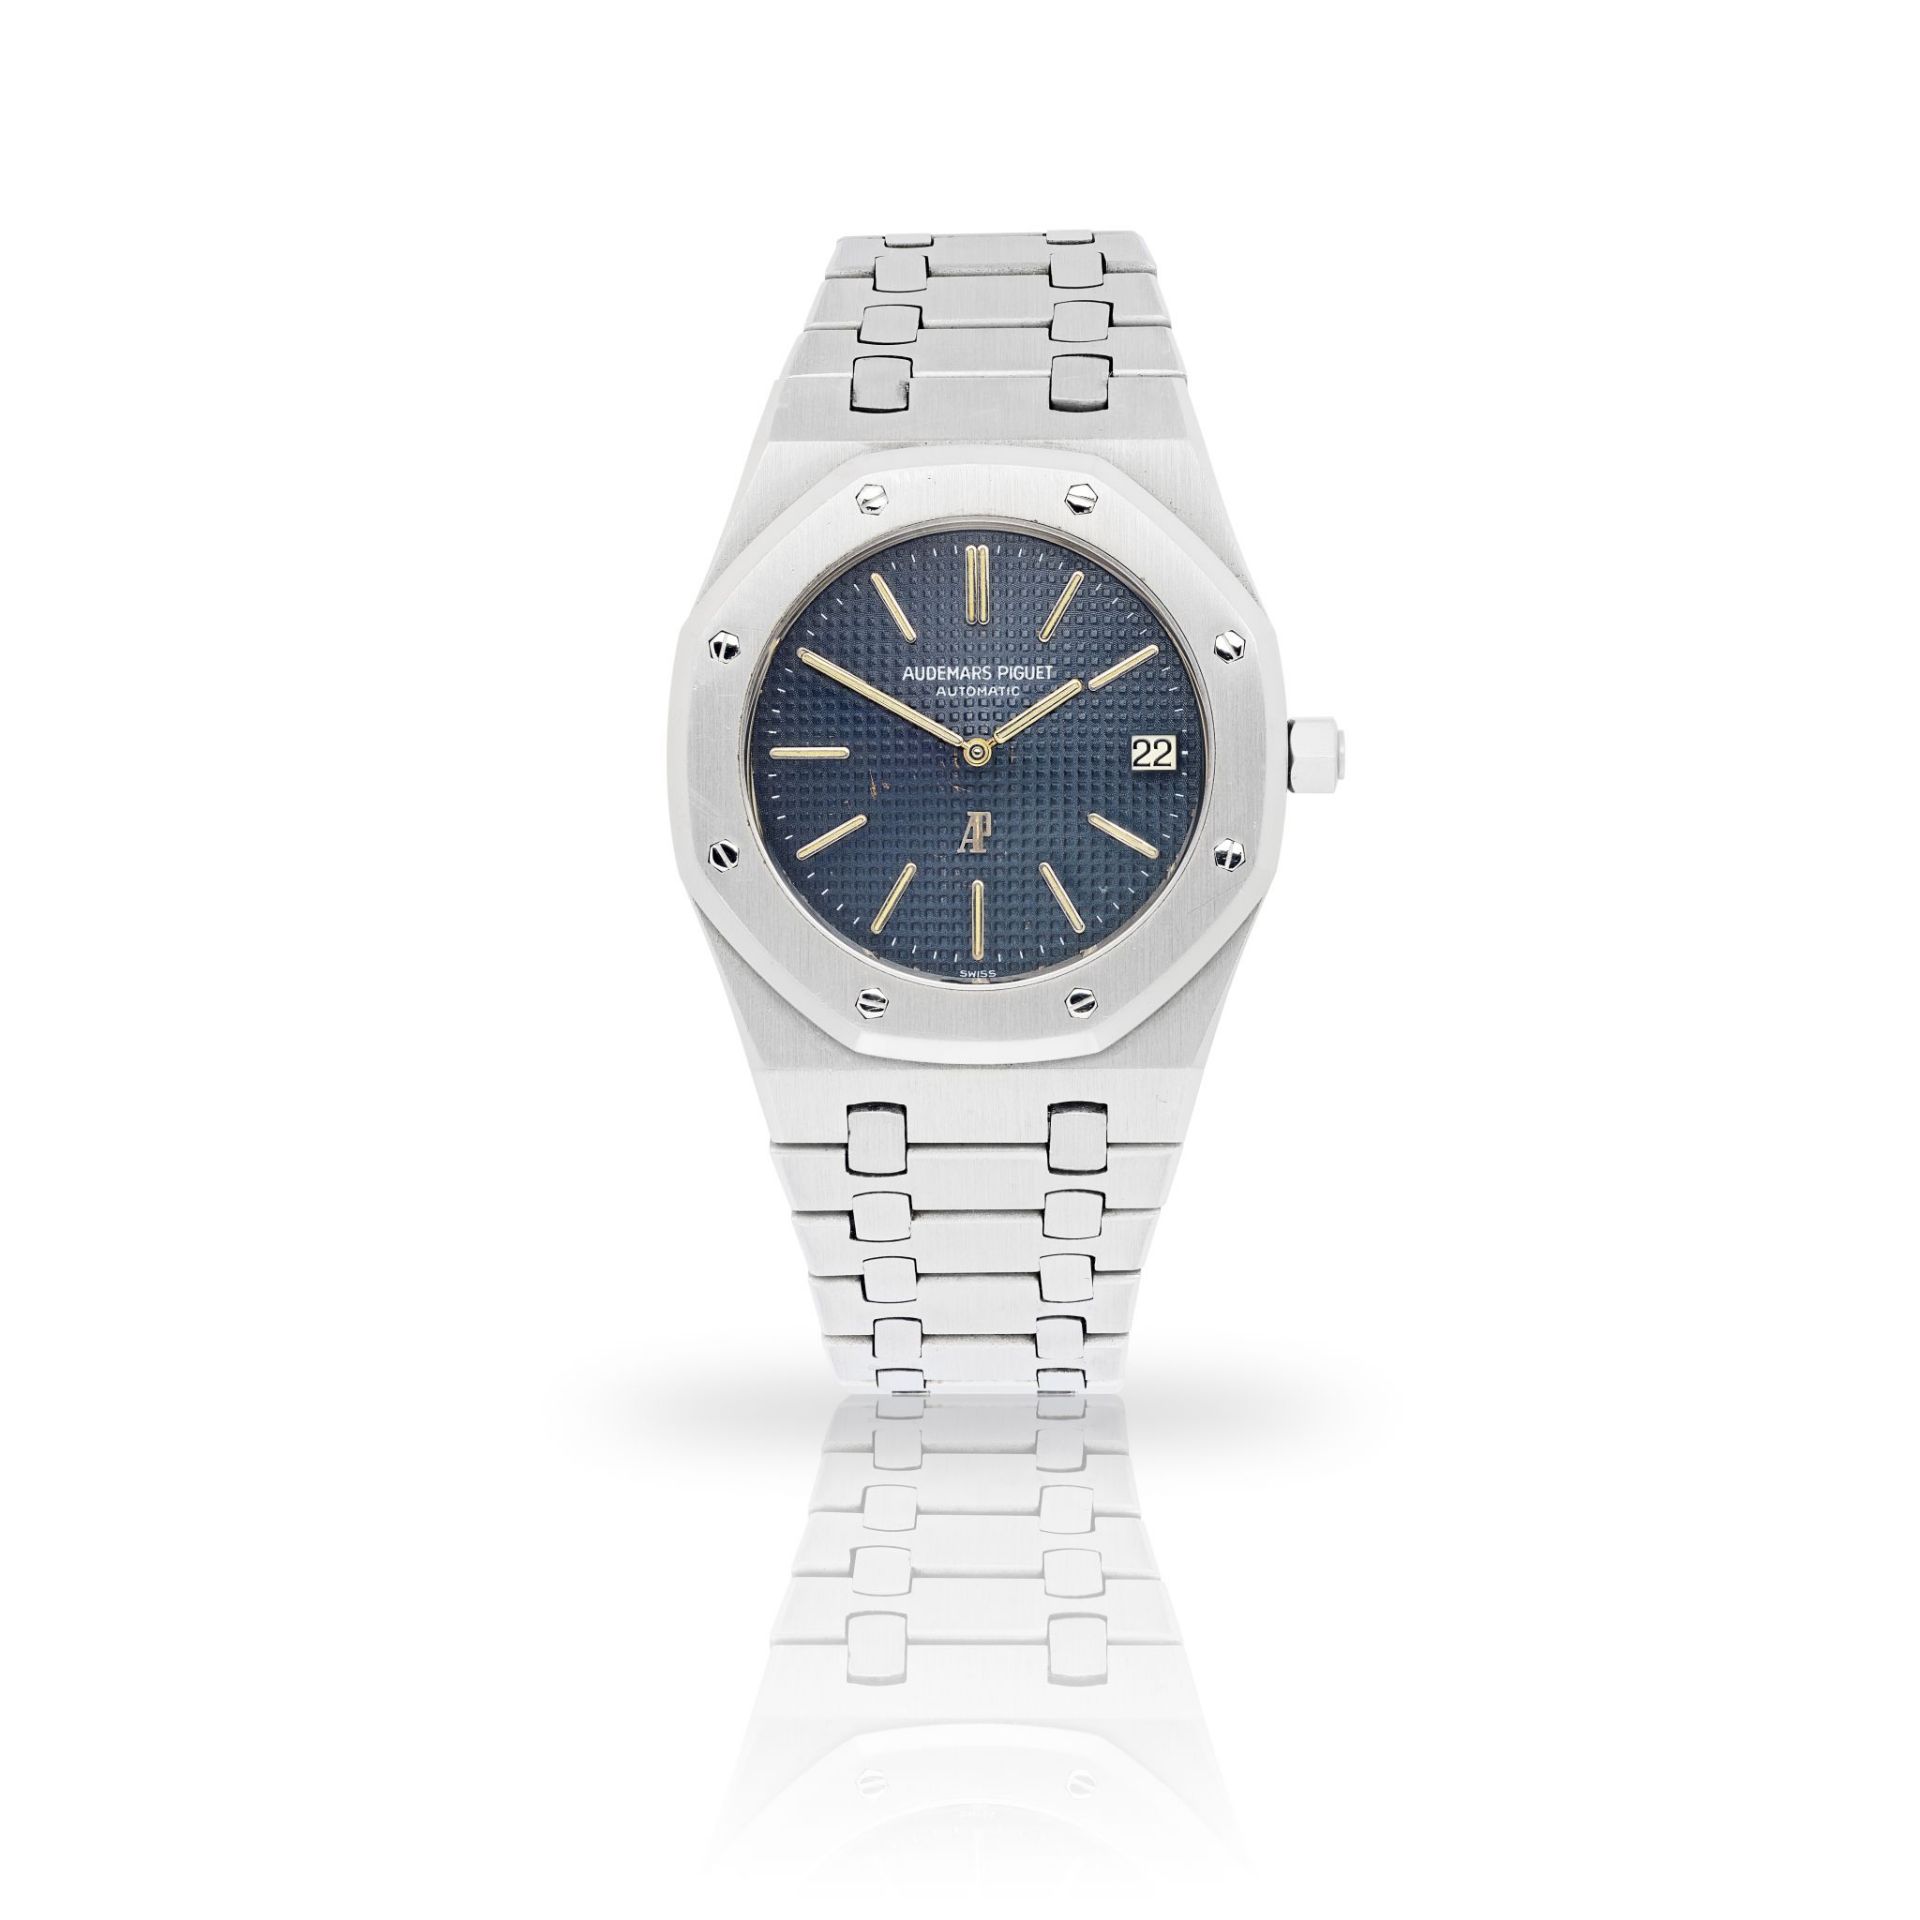 Audemars Piguet: a rare Royal Oak wrist watch